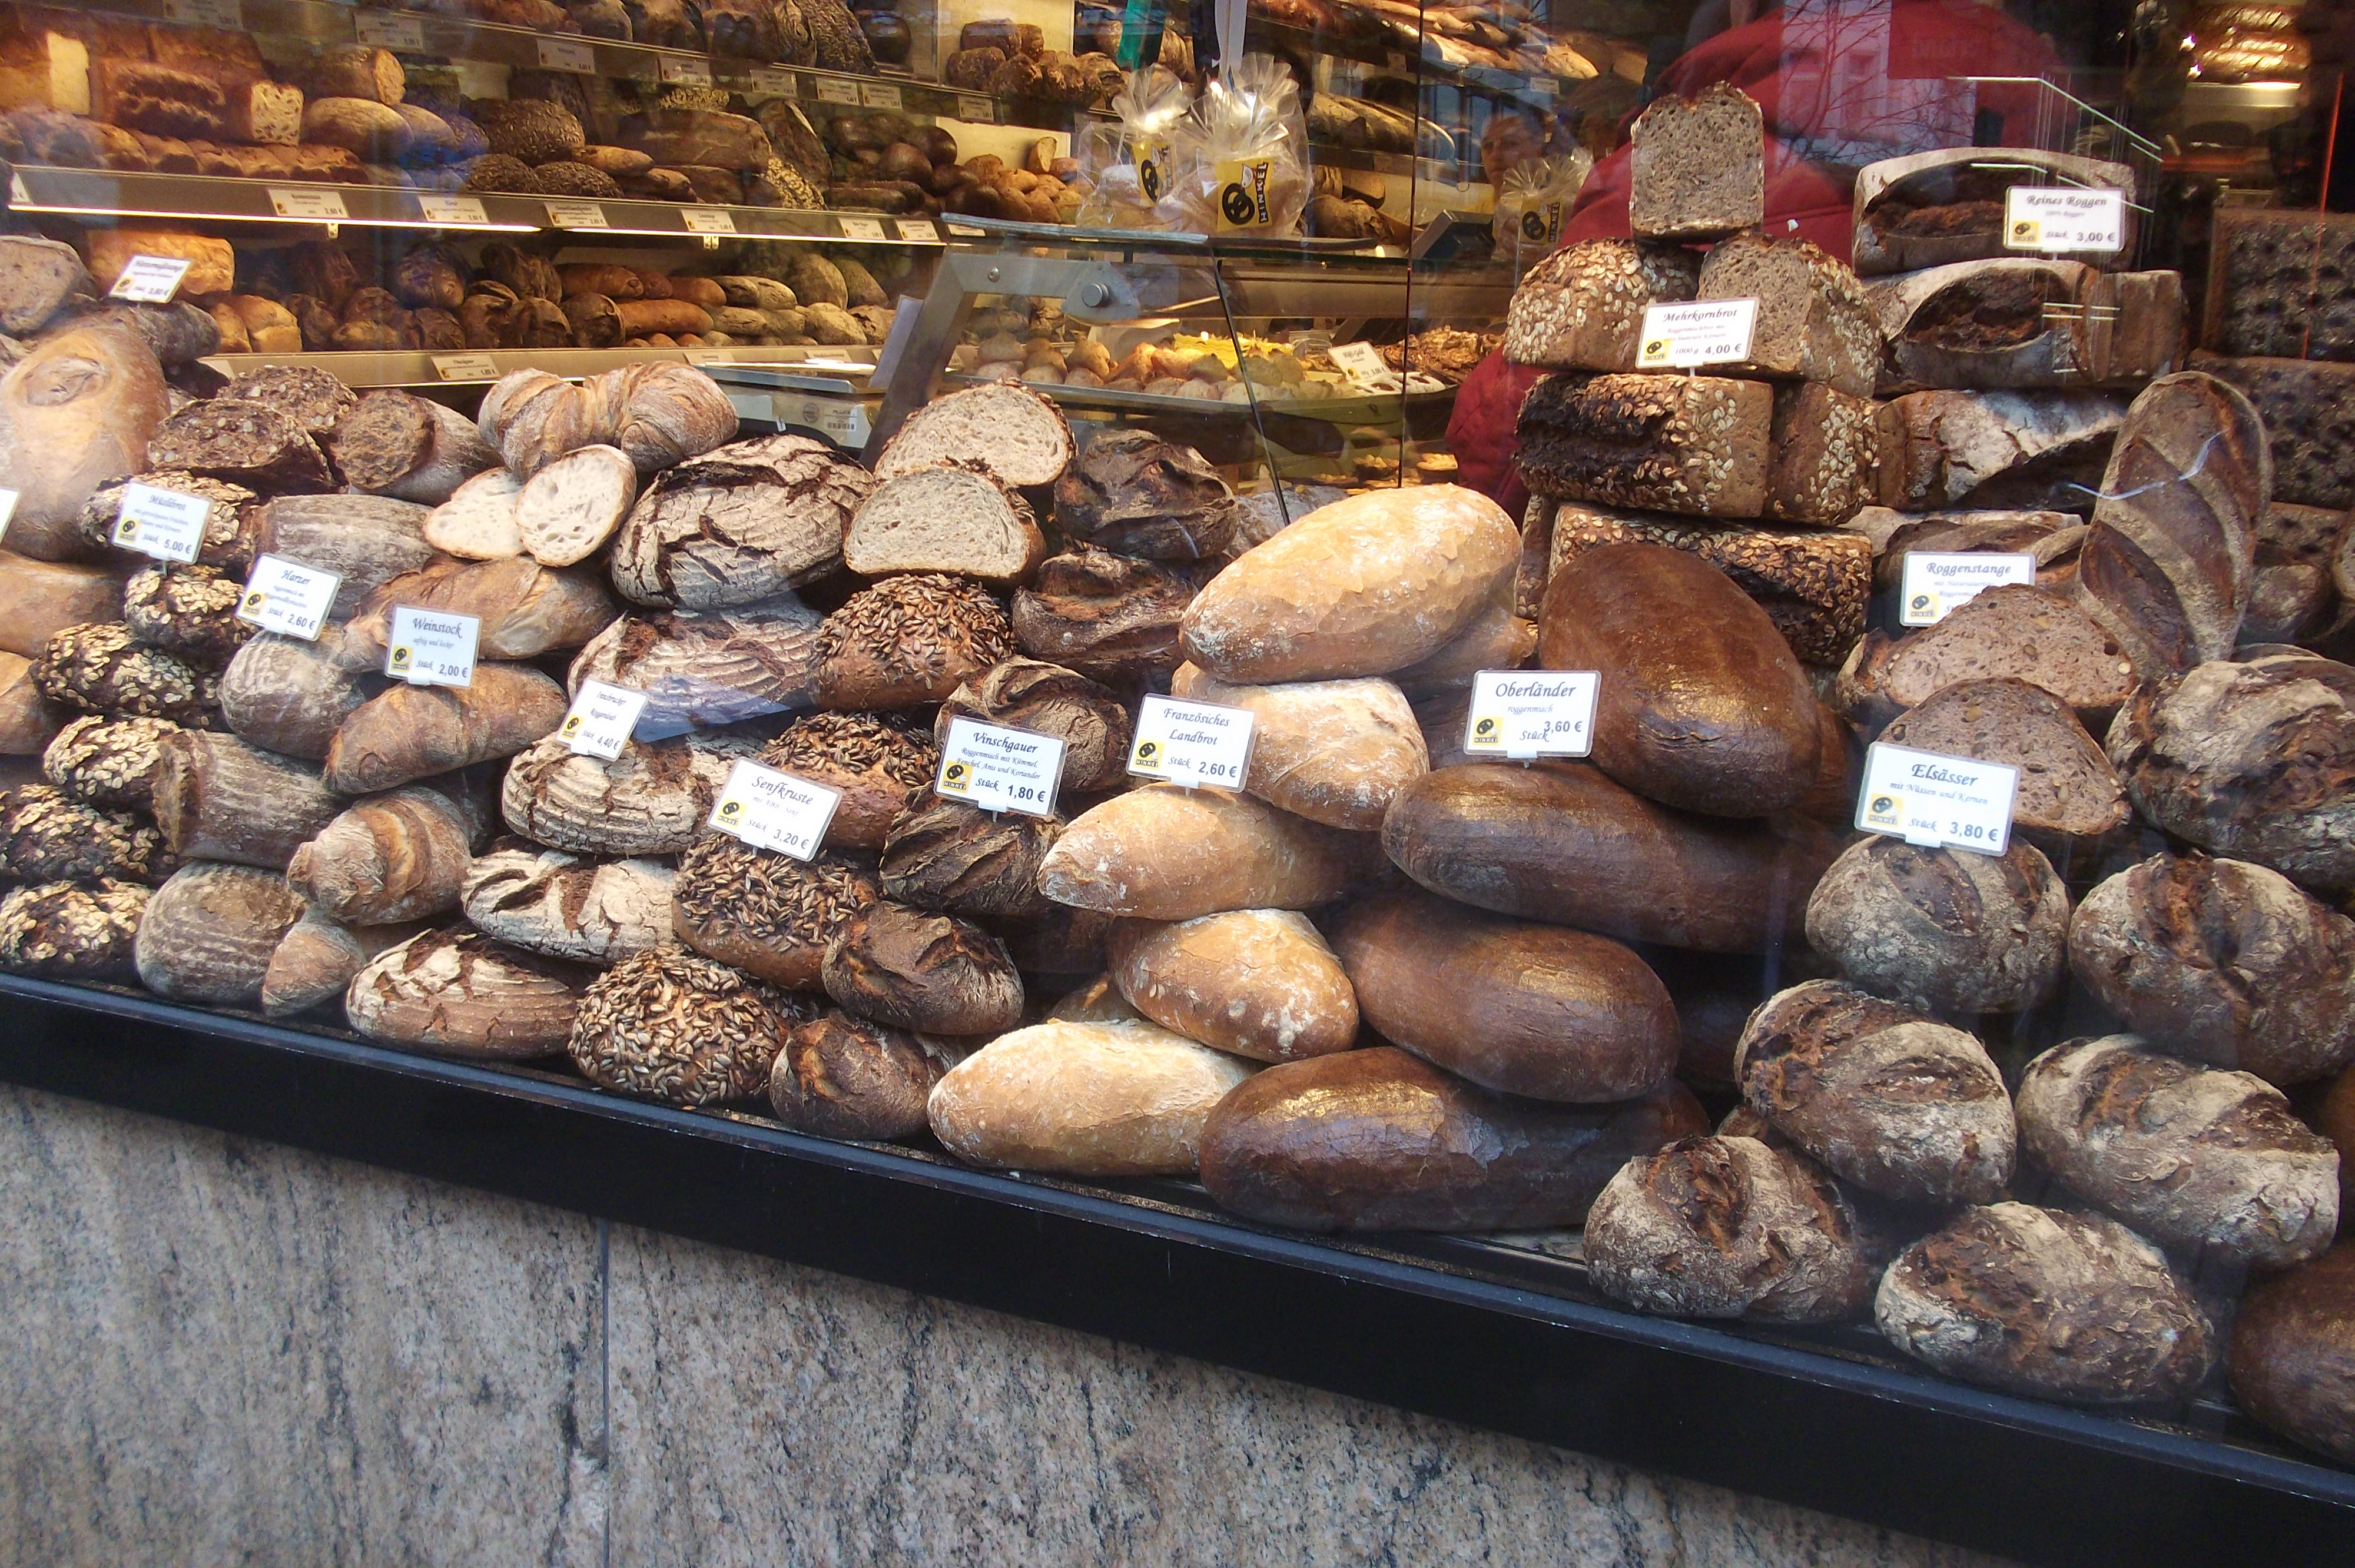 Yammy lecker Brot in handwerklicher Tradition